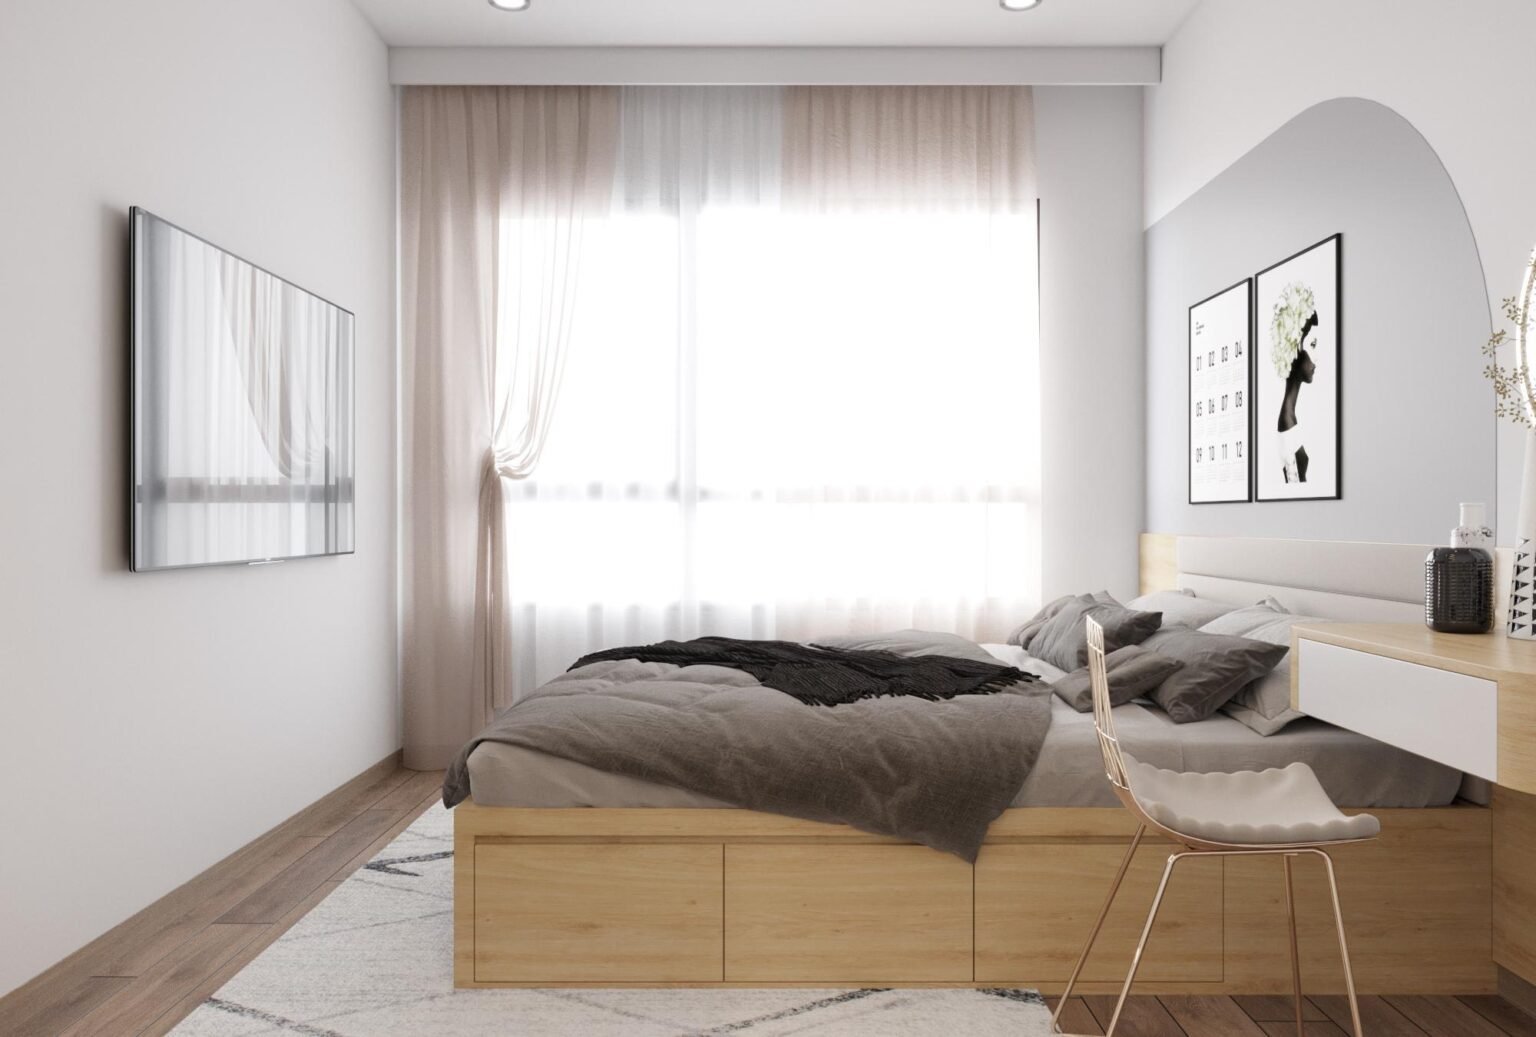 Phòng ngủ nhỏ càng trở nên trang nhã và lãng mạng với hệ thống rèm cửa hai lớp cực tinh tế